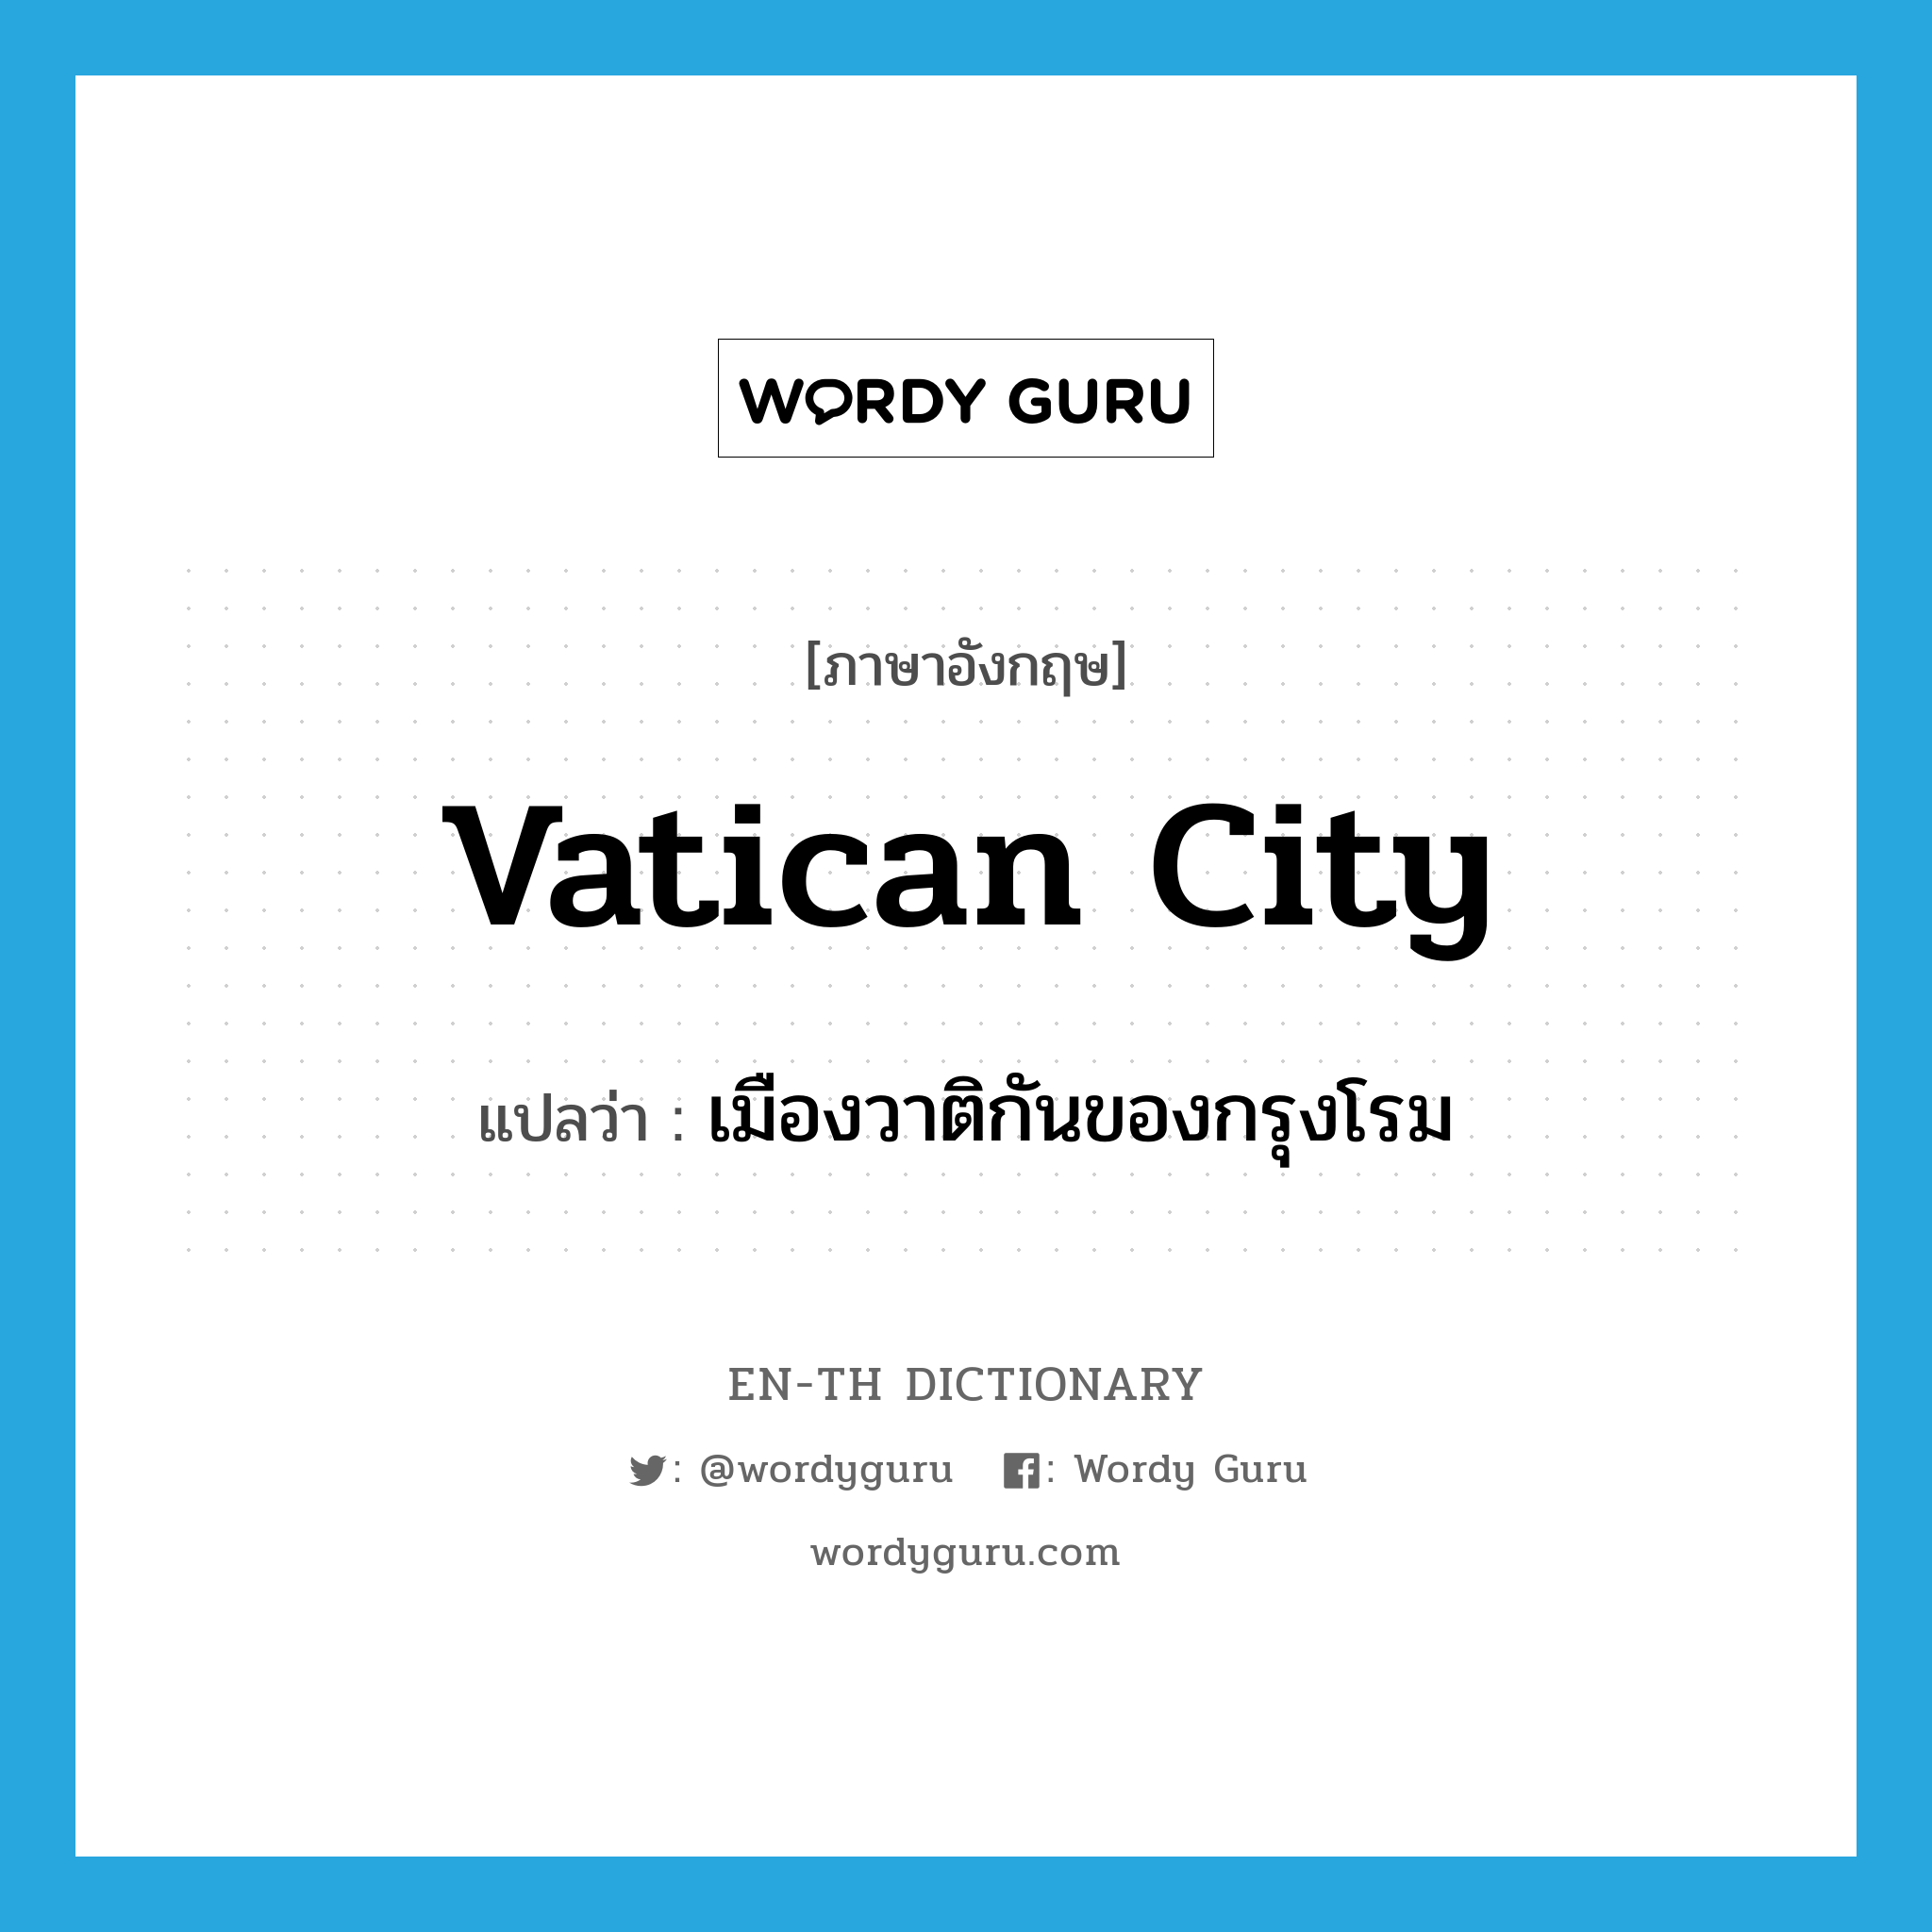 เมืองวาติกันของกรุงโรม ภาษาอังกฤษ?, คำศัพท์ภาษาอังกฤษ เมืองวาติกันของกรุงโรม แปลว่า Vatican City ประเภท N หมวด N